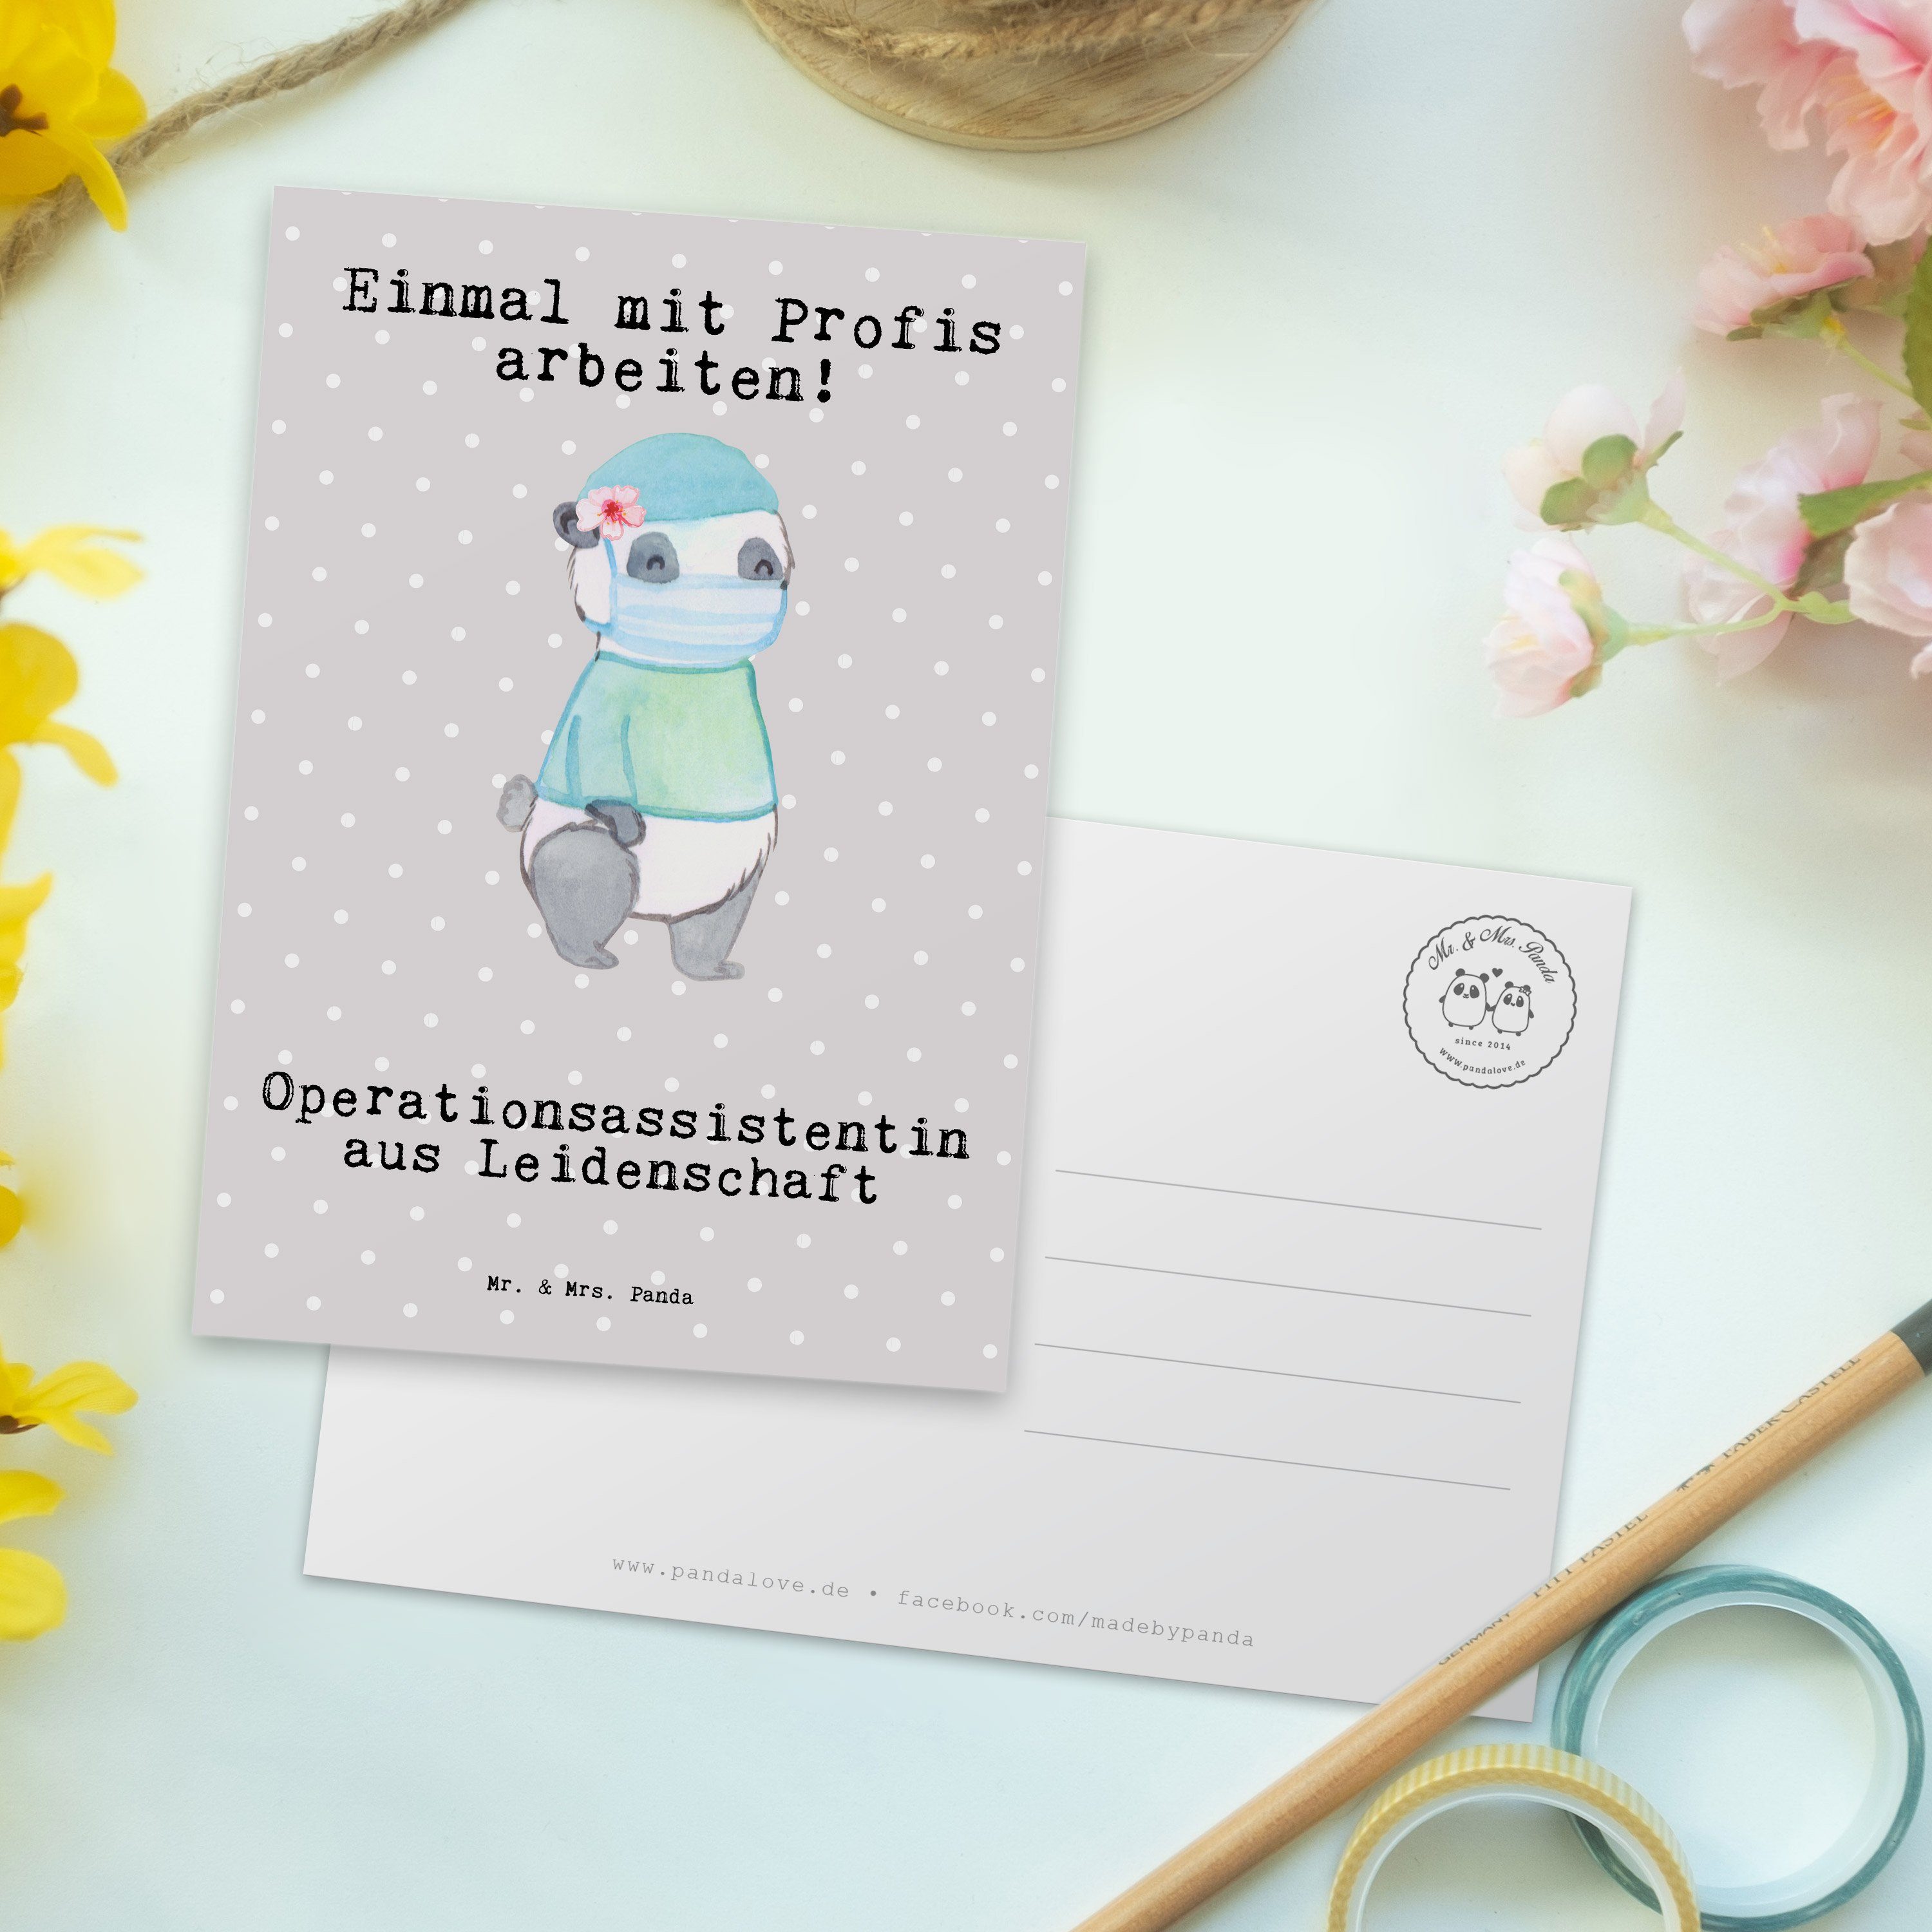 Mr. & Mrs. Panda Grau Pastell - Geschenk, Postkarte Fir Leidenschaft - aus Operationsassistentin